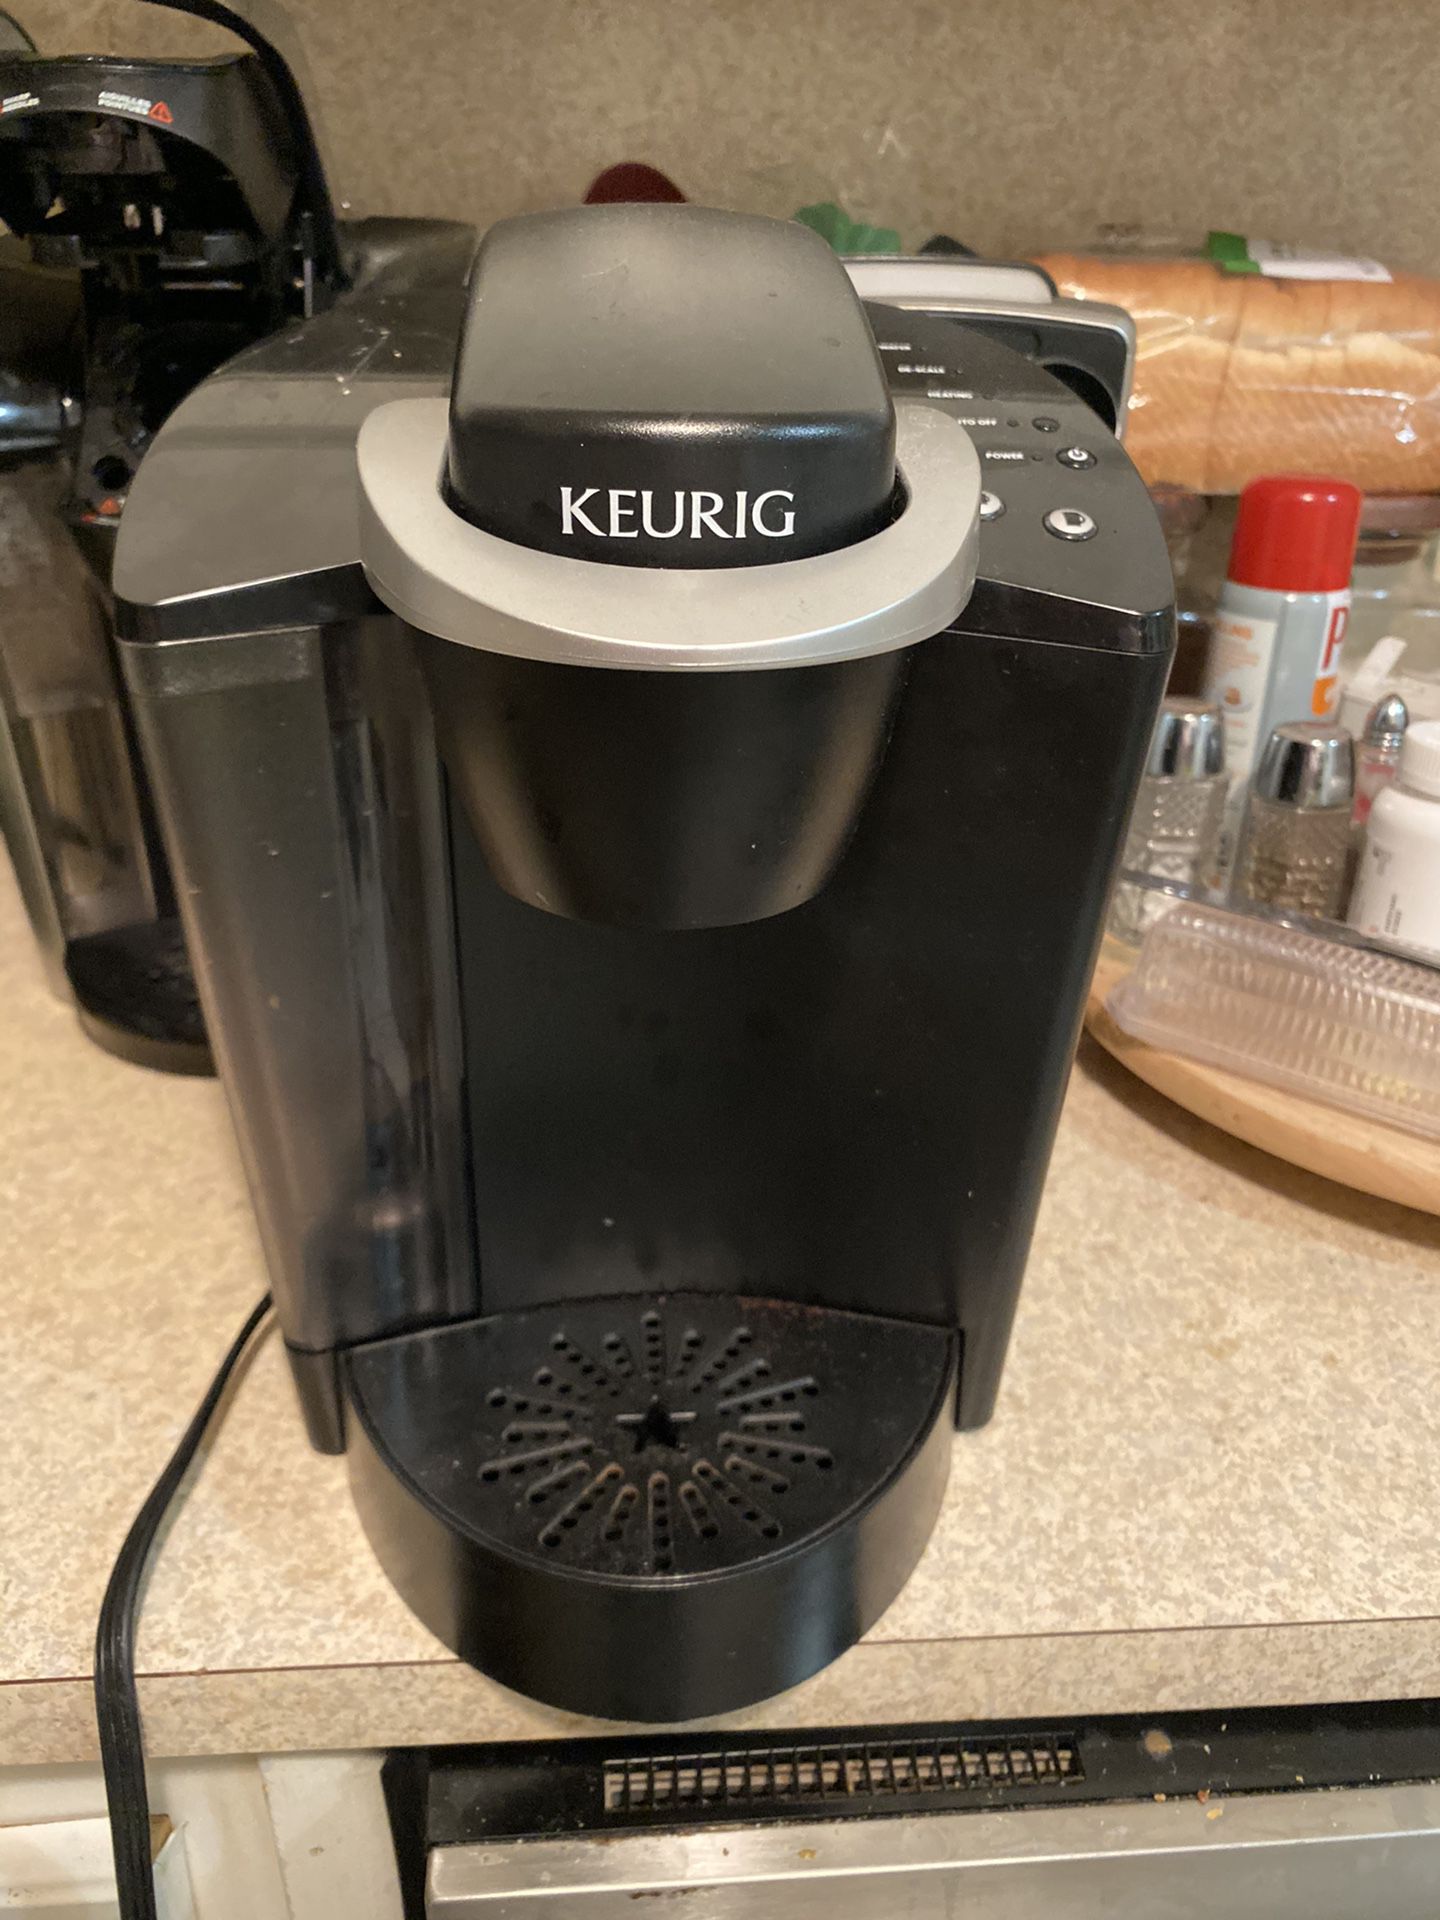 Kerrig coffee maker